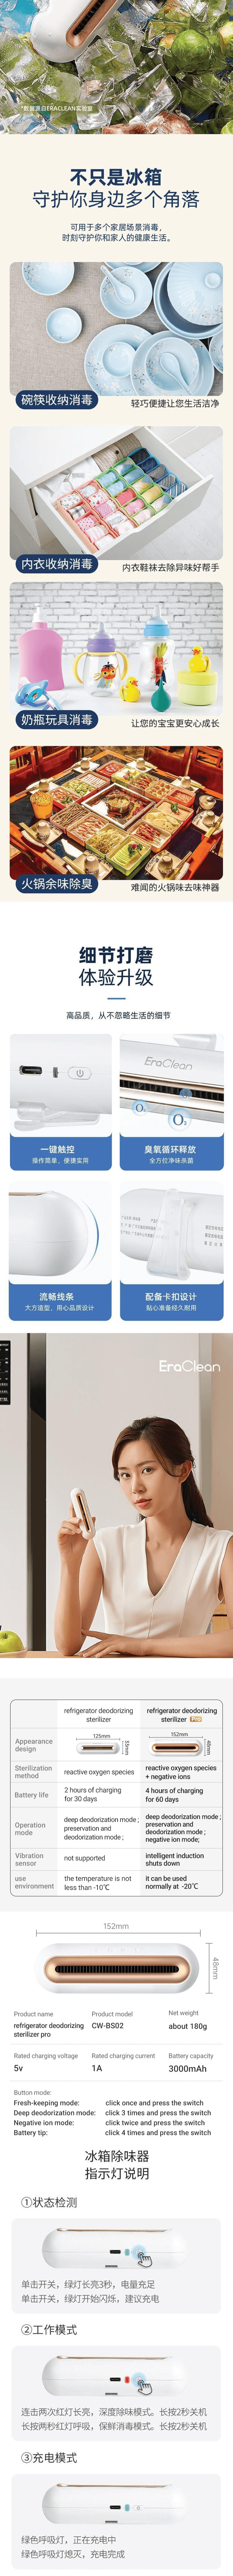 小米生態鏈 EraClean-世淨冰箱除味貼升級版2Pro CW-BS02 白色